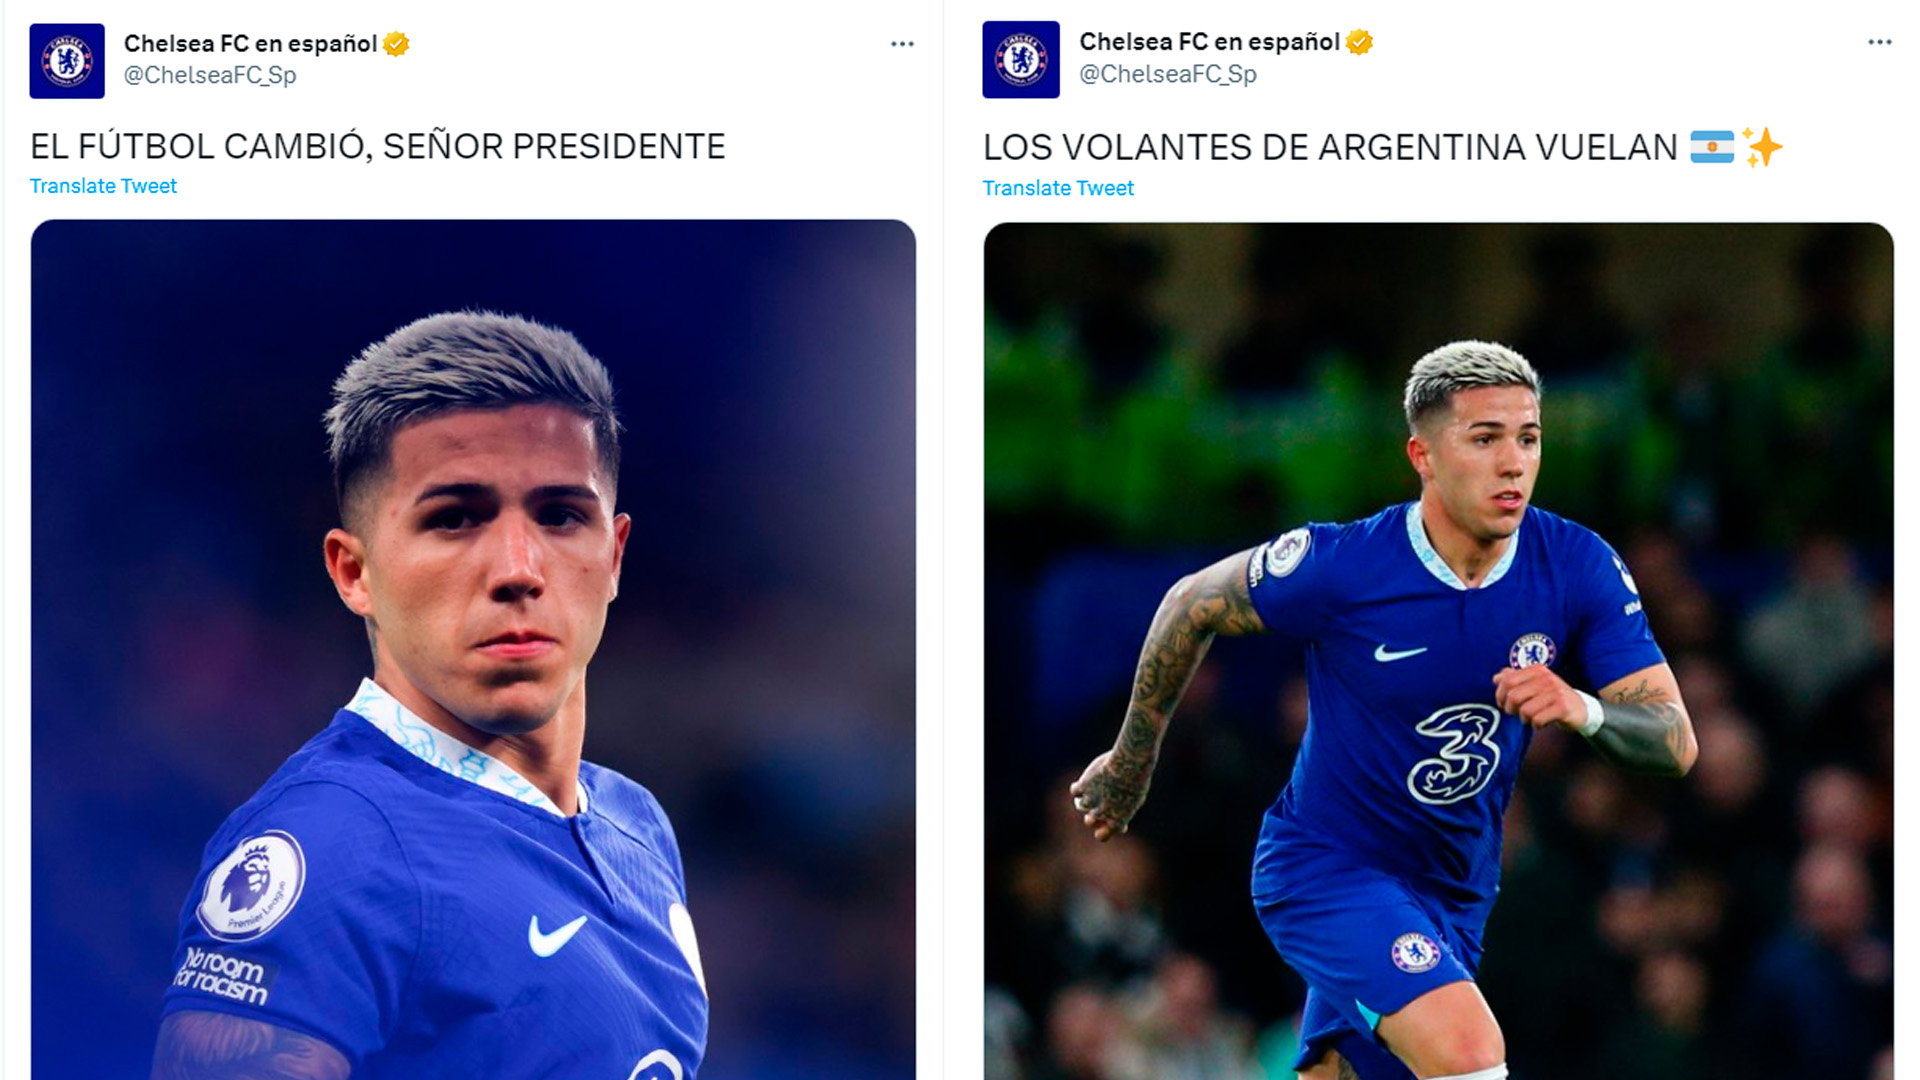 Los mensajes del perfil oficial del Chelsea en español sobre su flamante incorporación